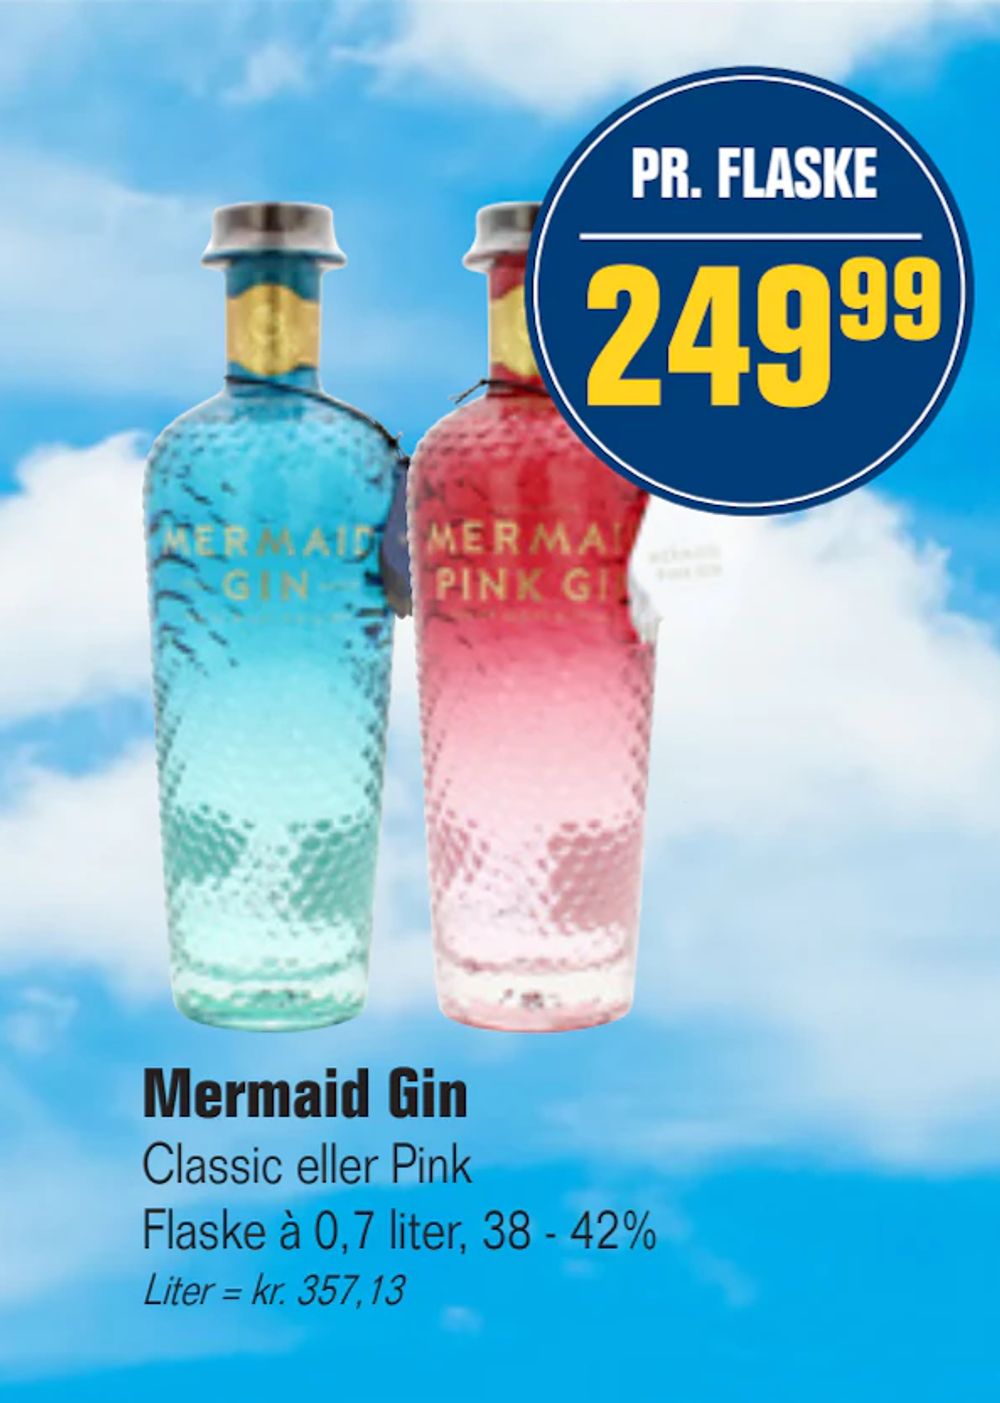 Tilbud på Mermaid Gin fra Otto Duborg til 249,99 kr.